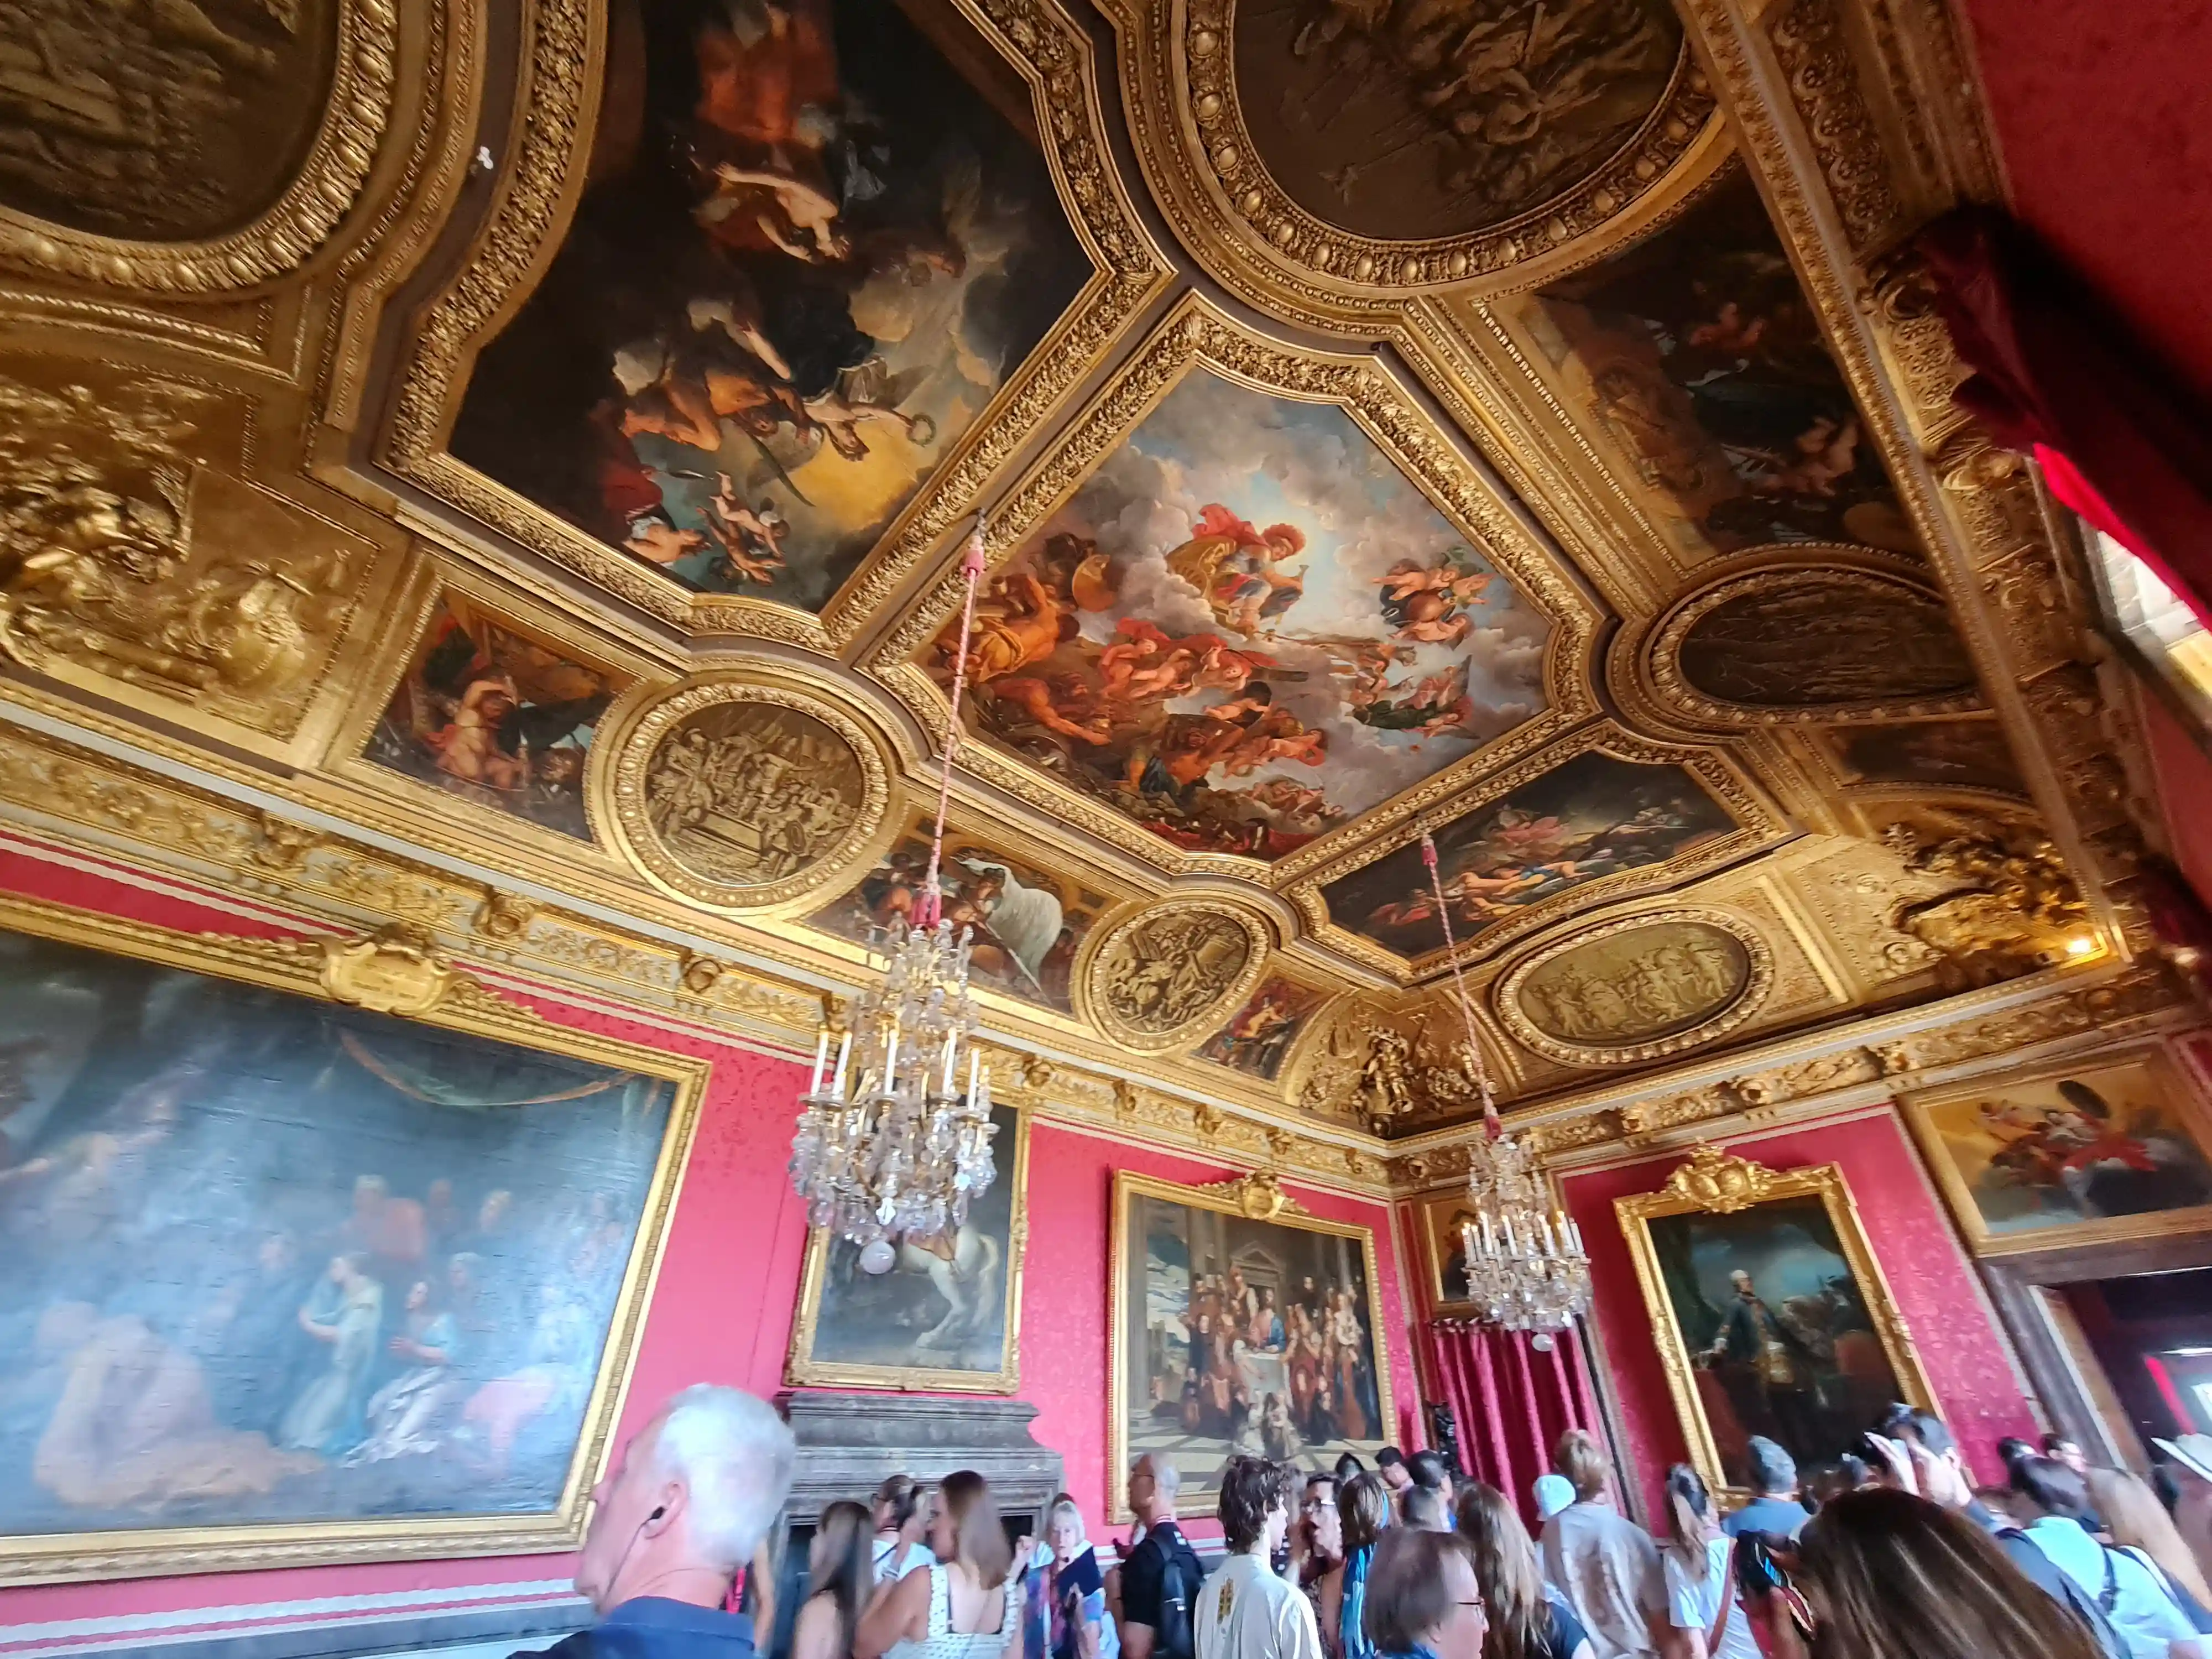 베르사유 궁전 내부 화려한 천장화들과 금박. 많은사람들